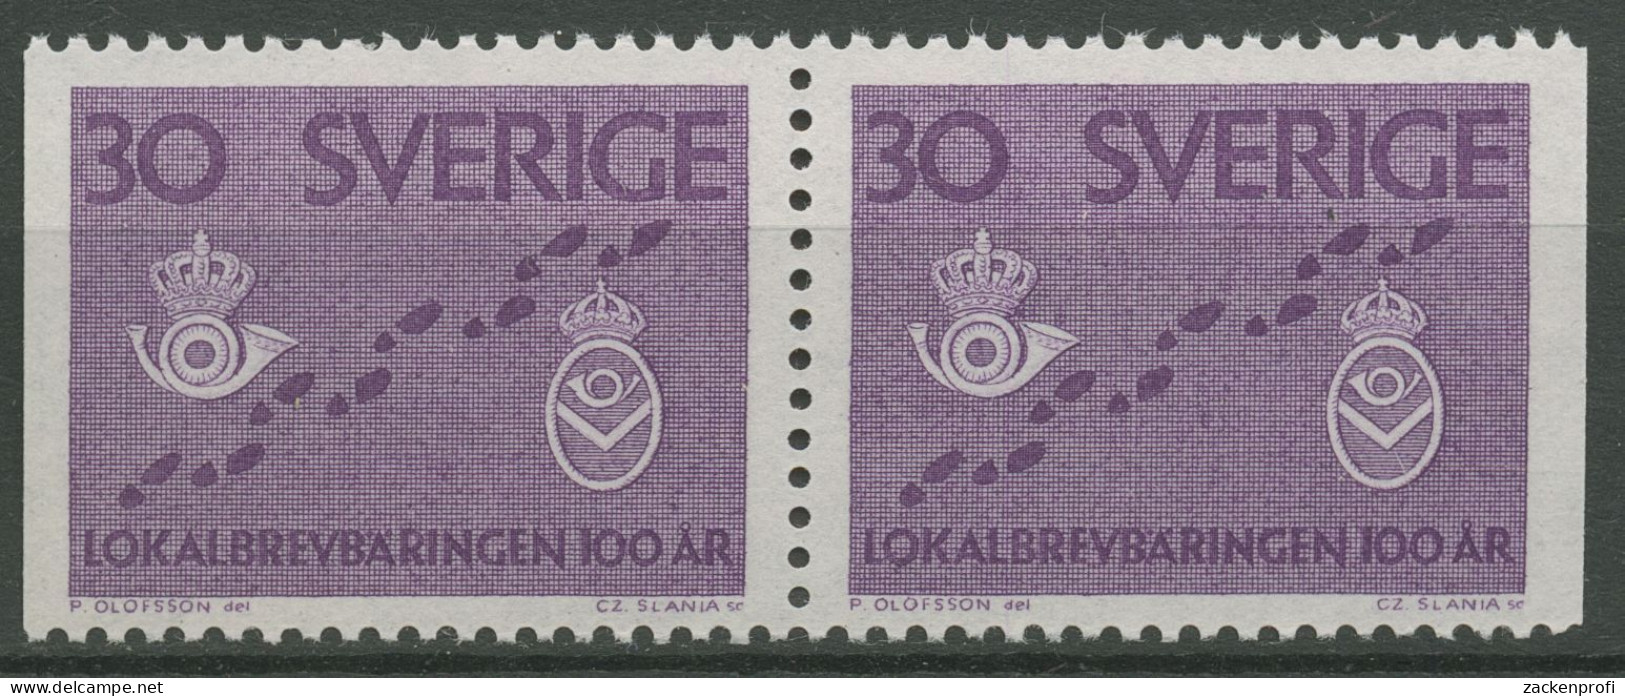 Schweden 1962 Postzustellung Briefträger-Brustschilder 485 Dl/Dr Paar Postfrisch - Nuevos